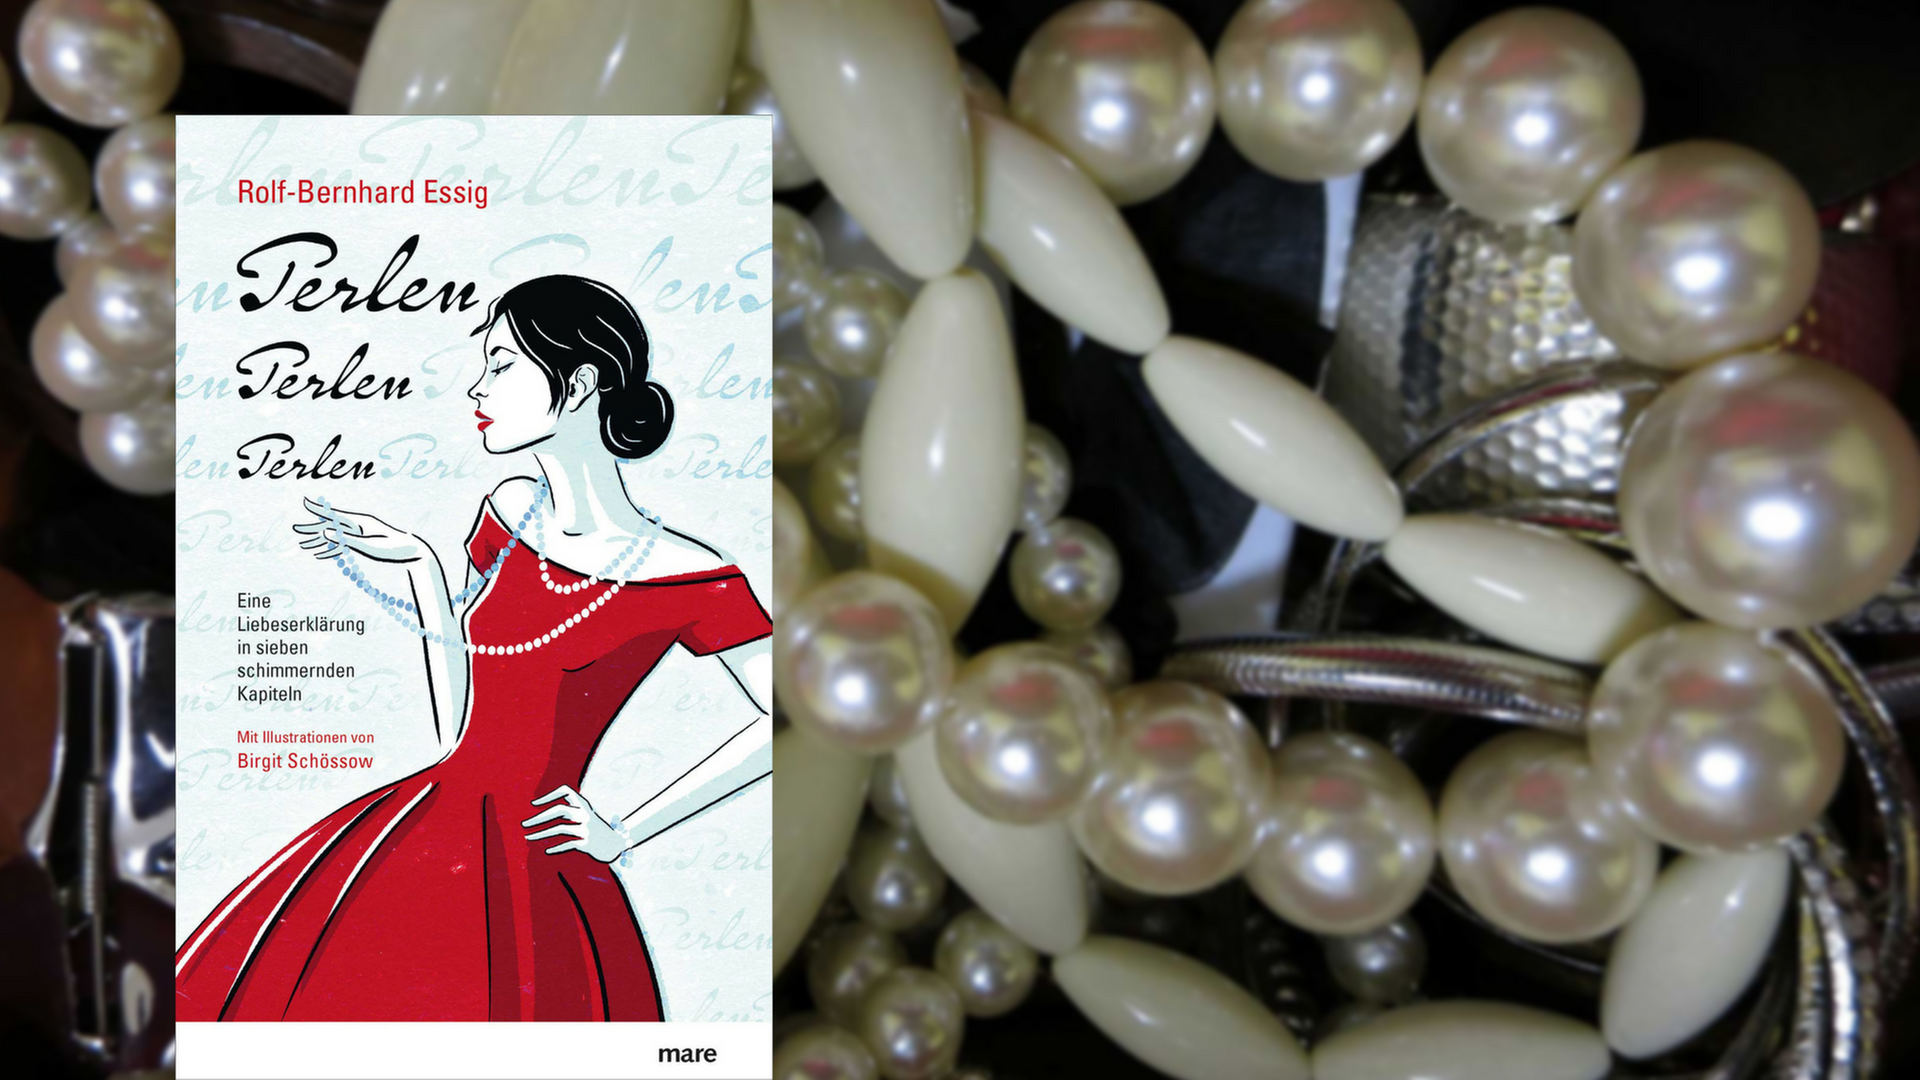 Buchcover von "Perlen, Perlen, Perlen" von Rolf-Bernhard Essig